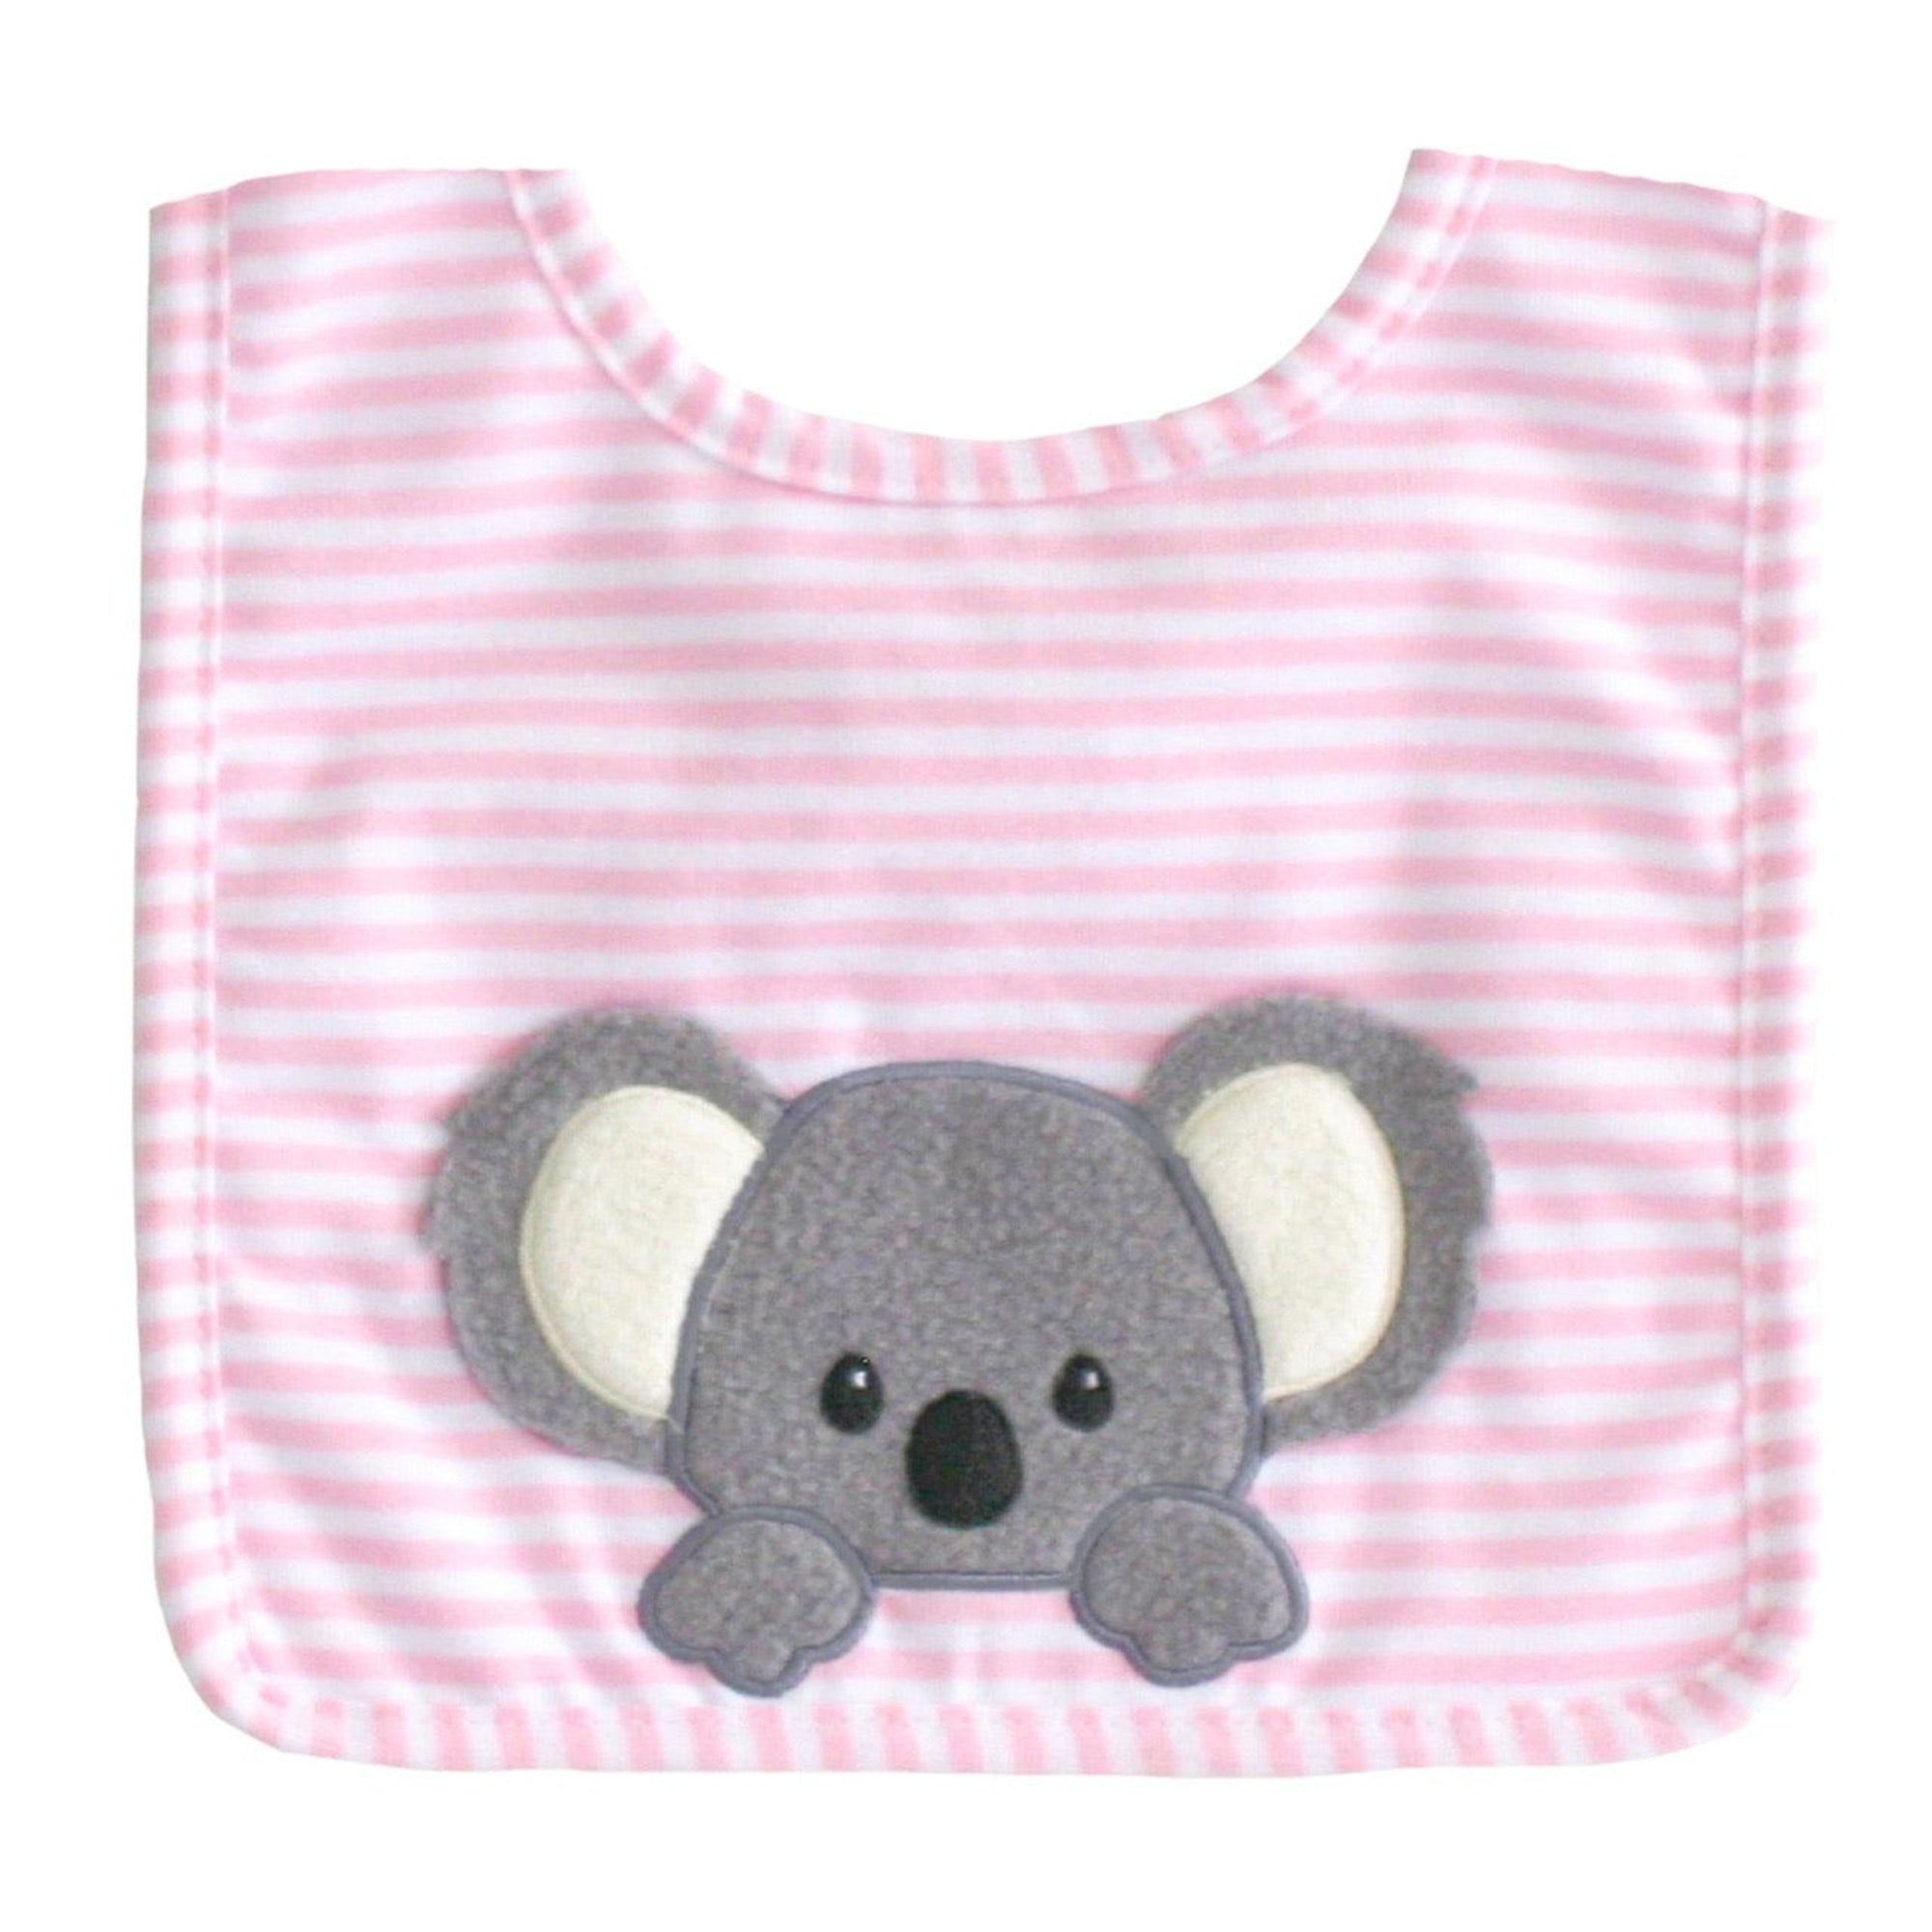 Alimrose Baby Koala Bib - Pink - Bib - Alimrose